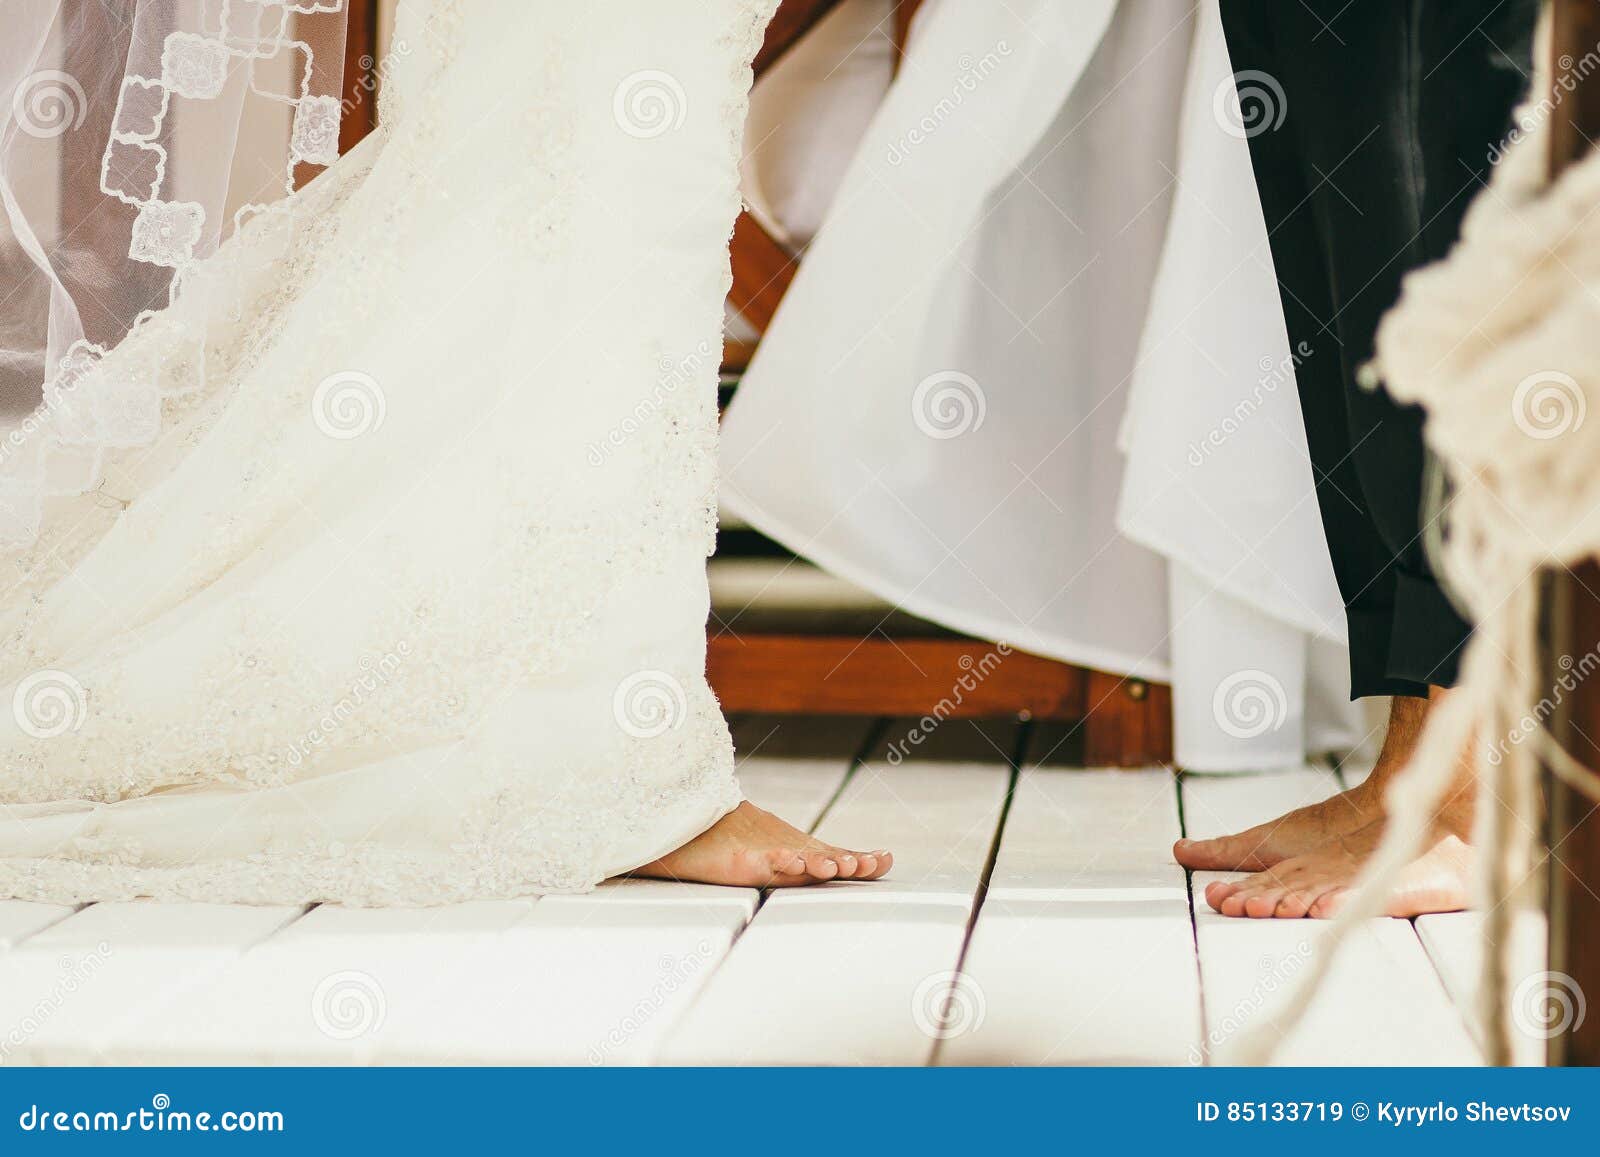 Barefoot Wedding Couple stock image. Image of couple - 85133719